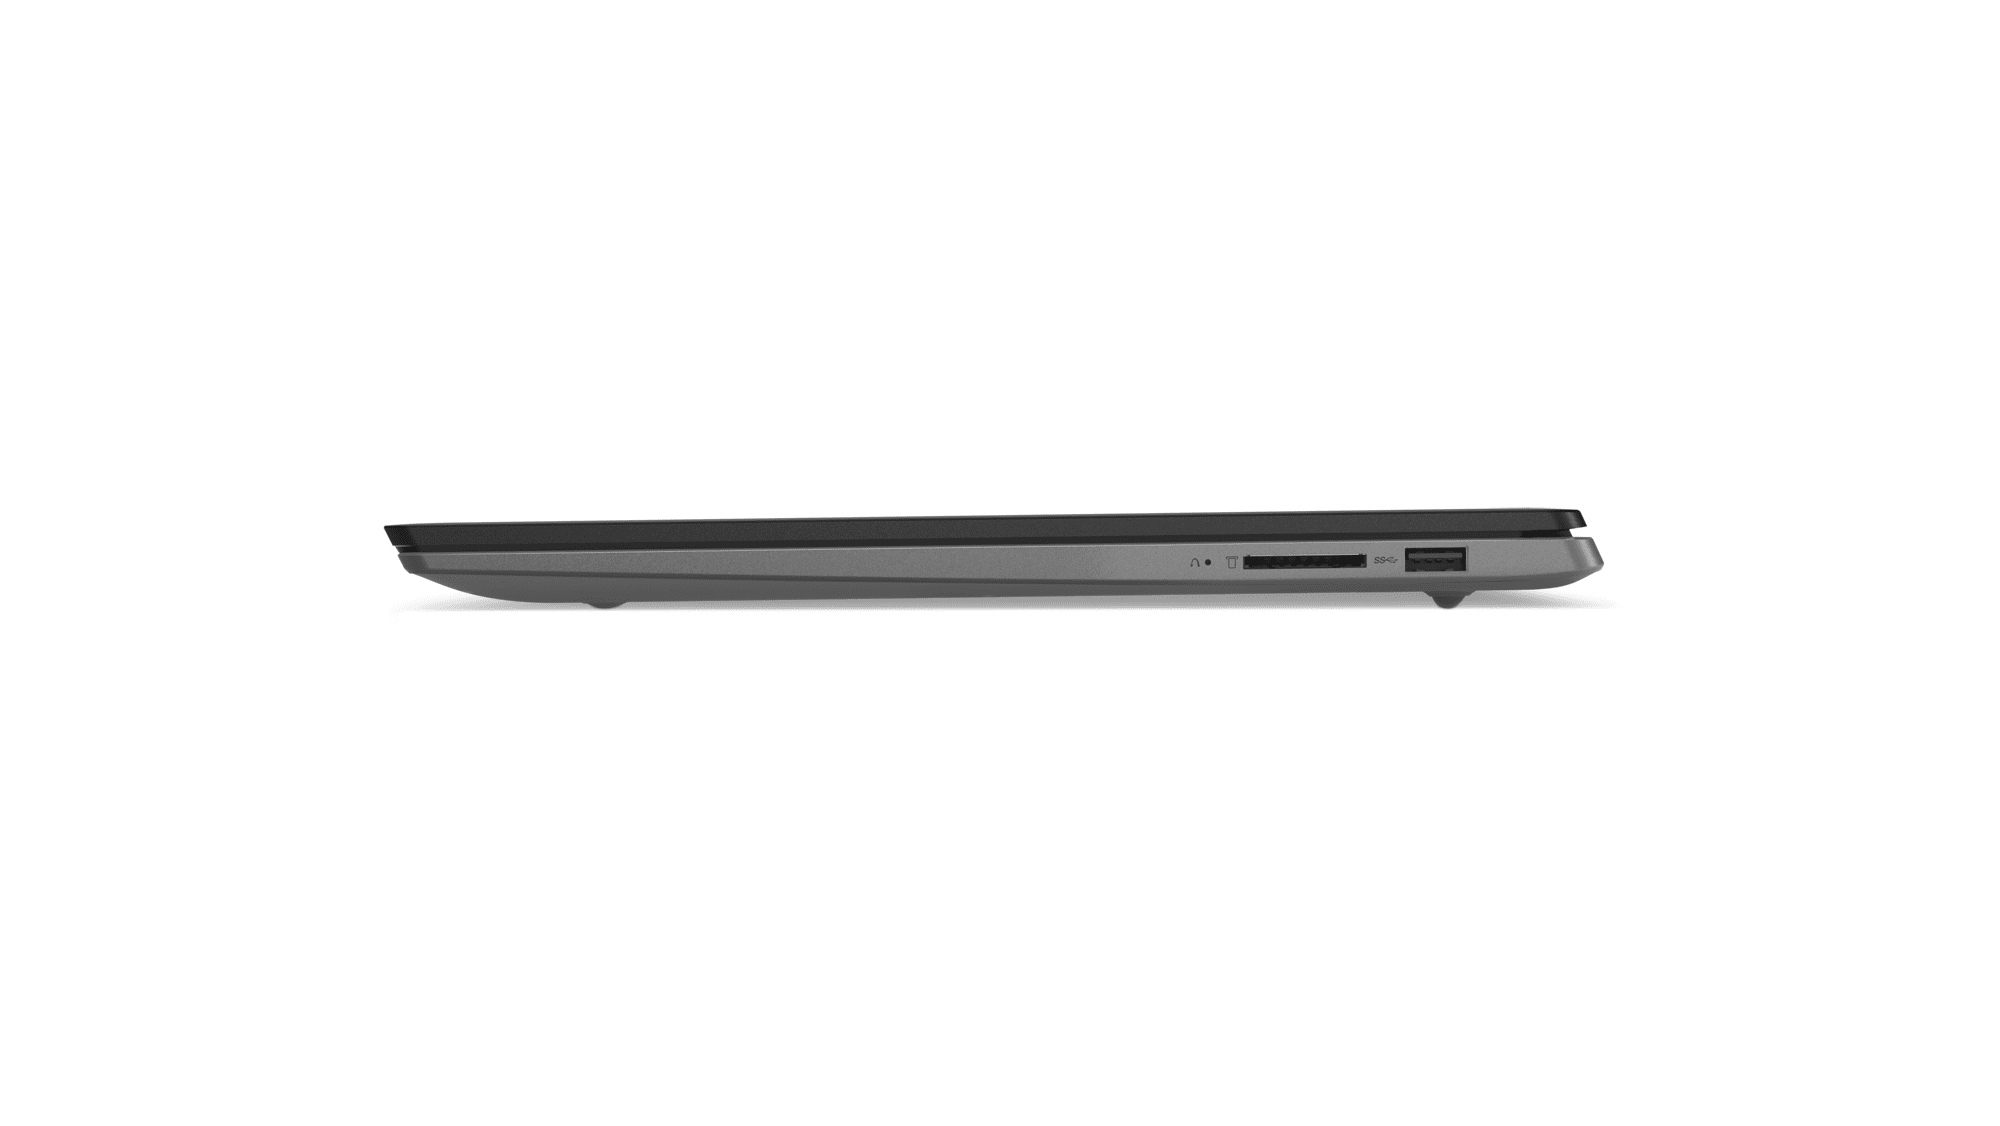  Ноутбук LENOVO IdeaPad 530S-15IKB (81EV0088RA) фото9